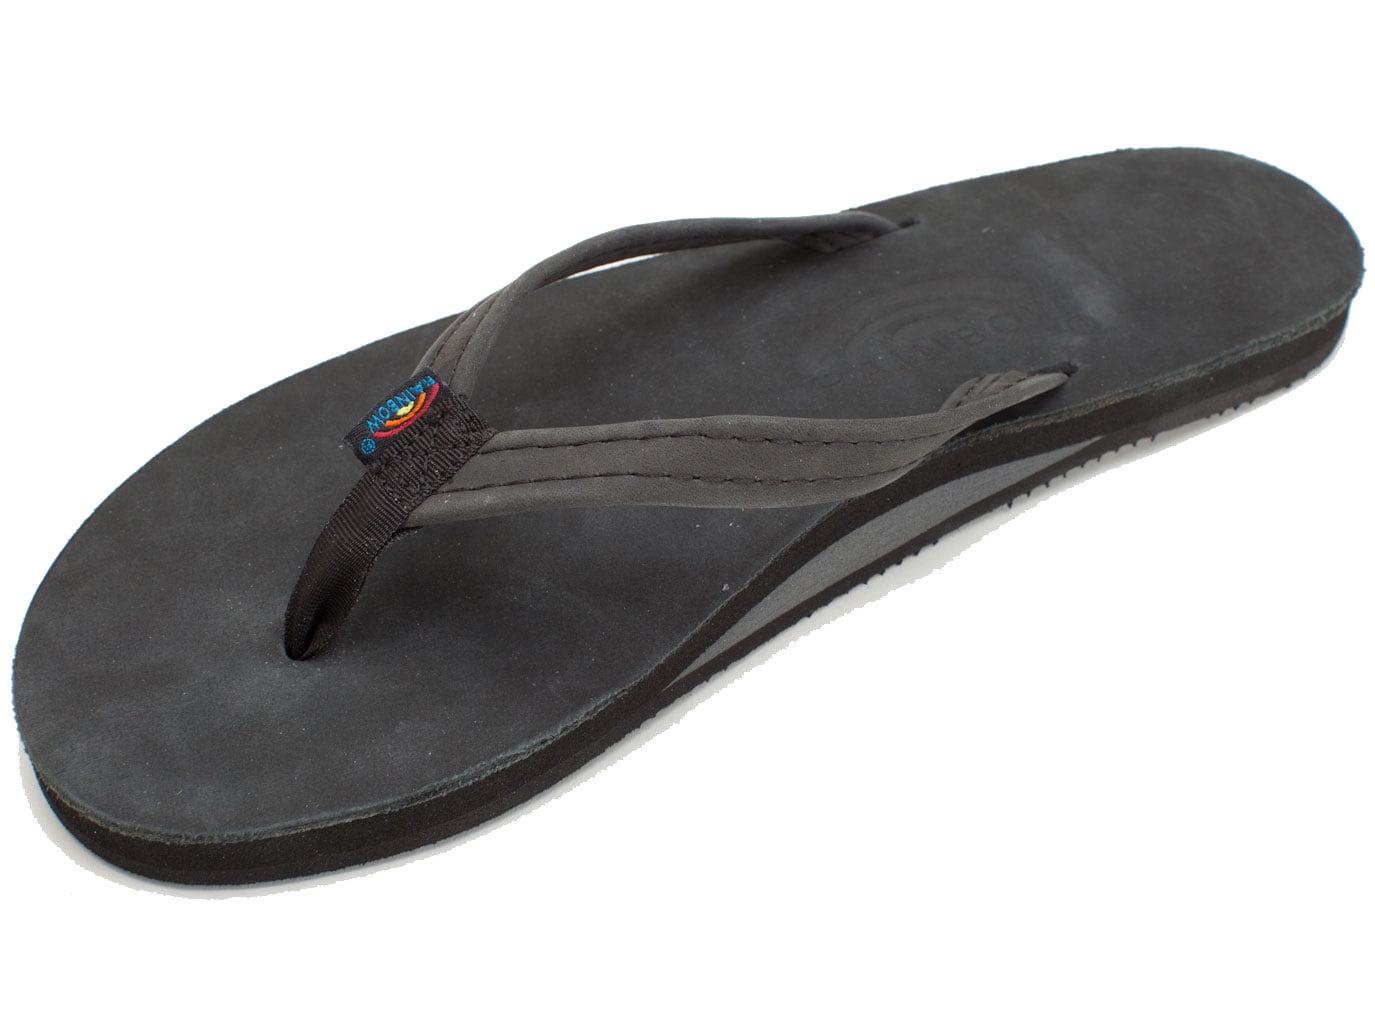 rainbow flip flops on sale